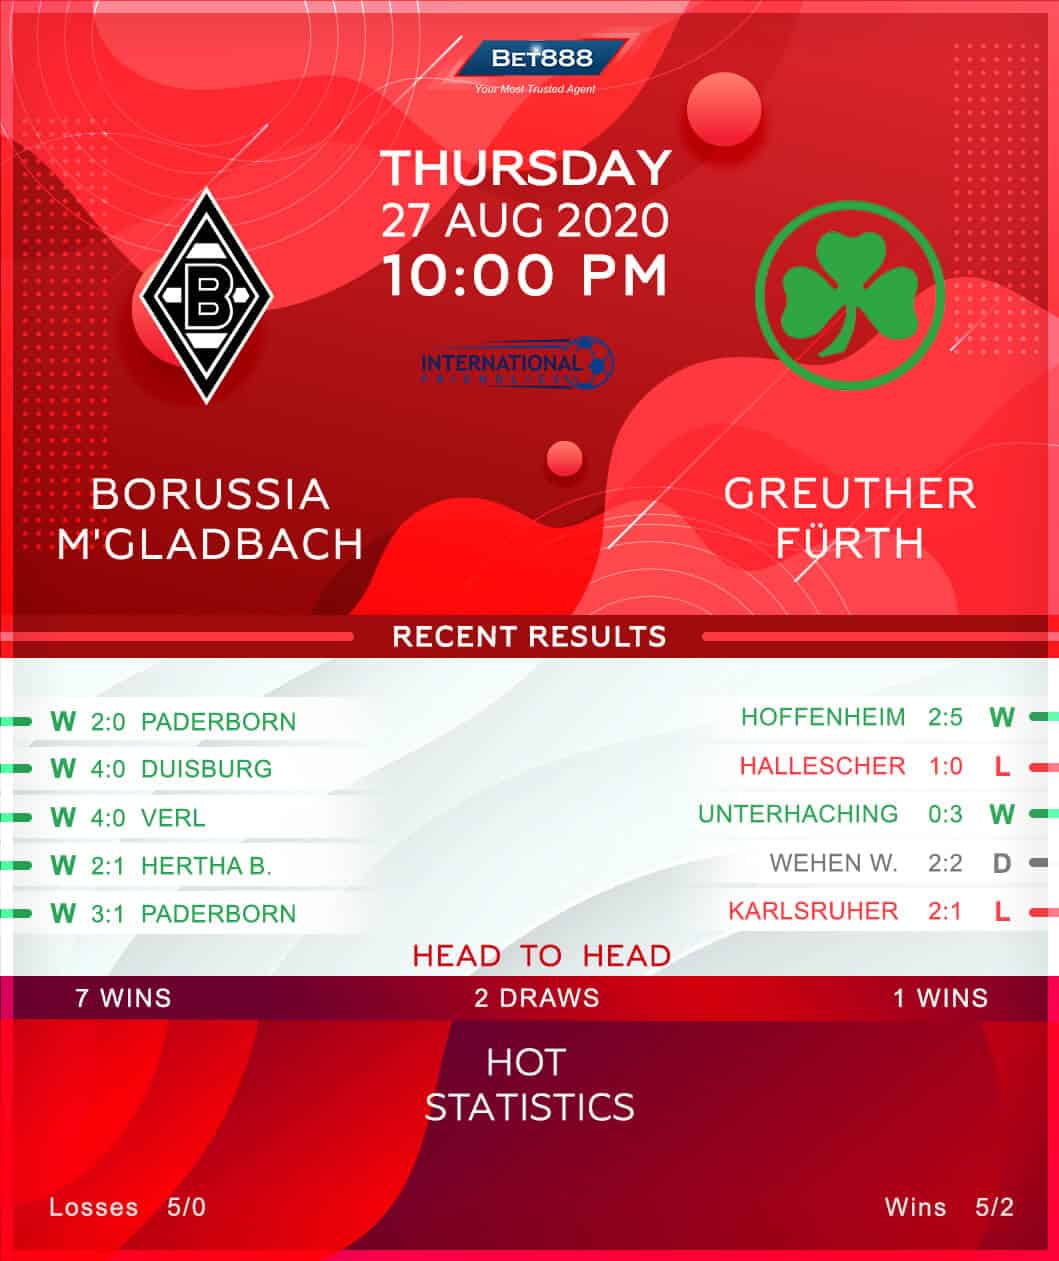 Borussia Monchengladbach vs Greuther Furth 27/08/20